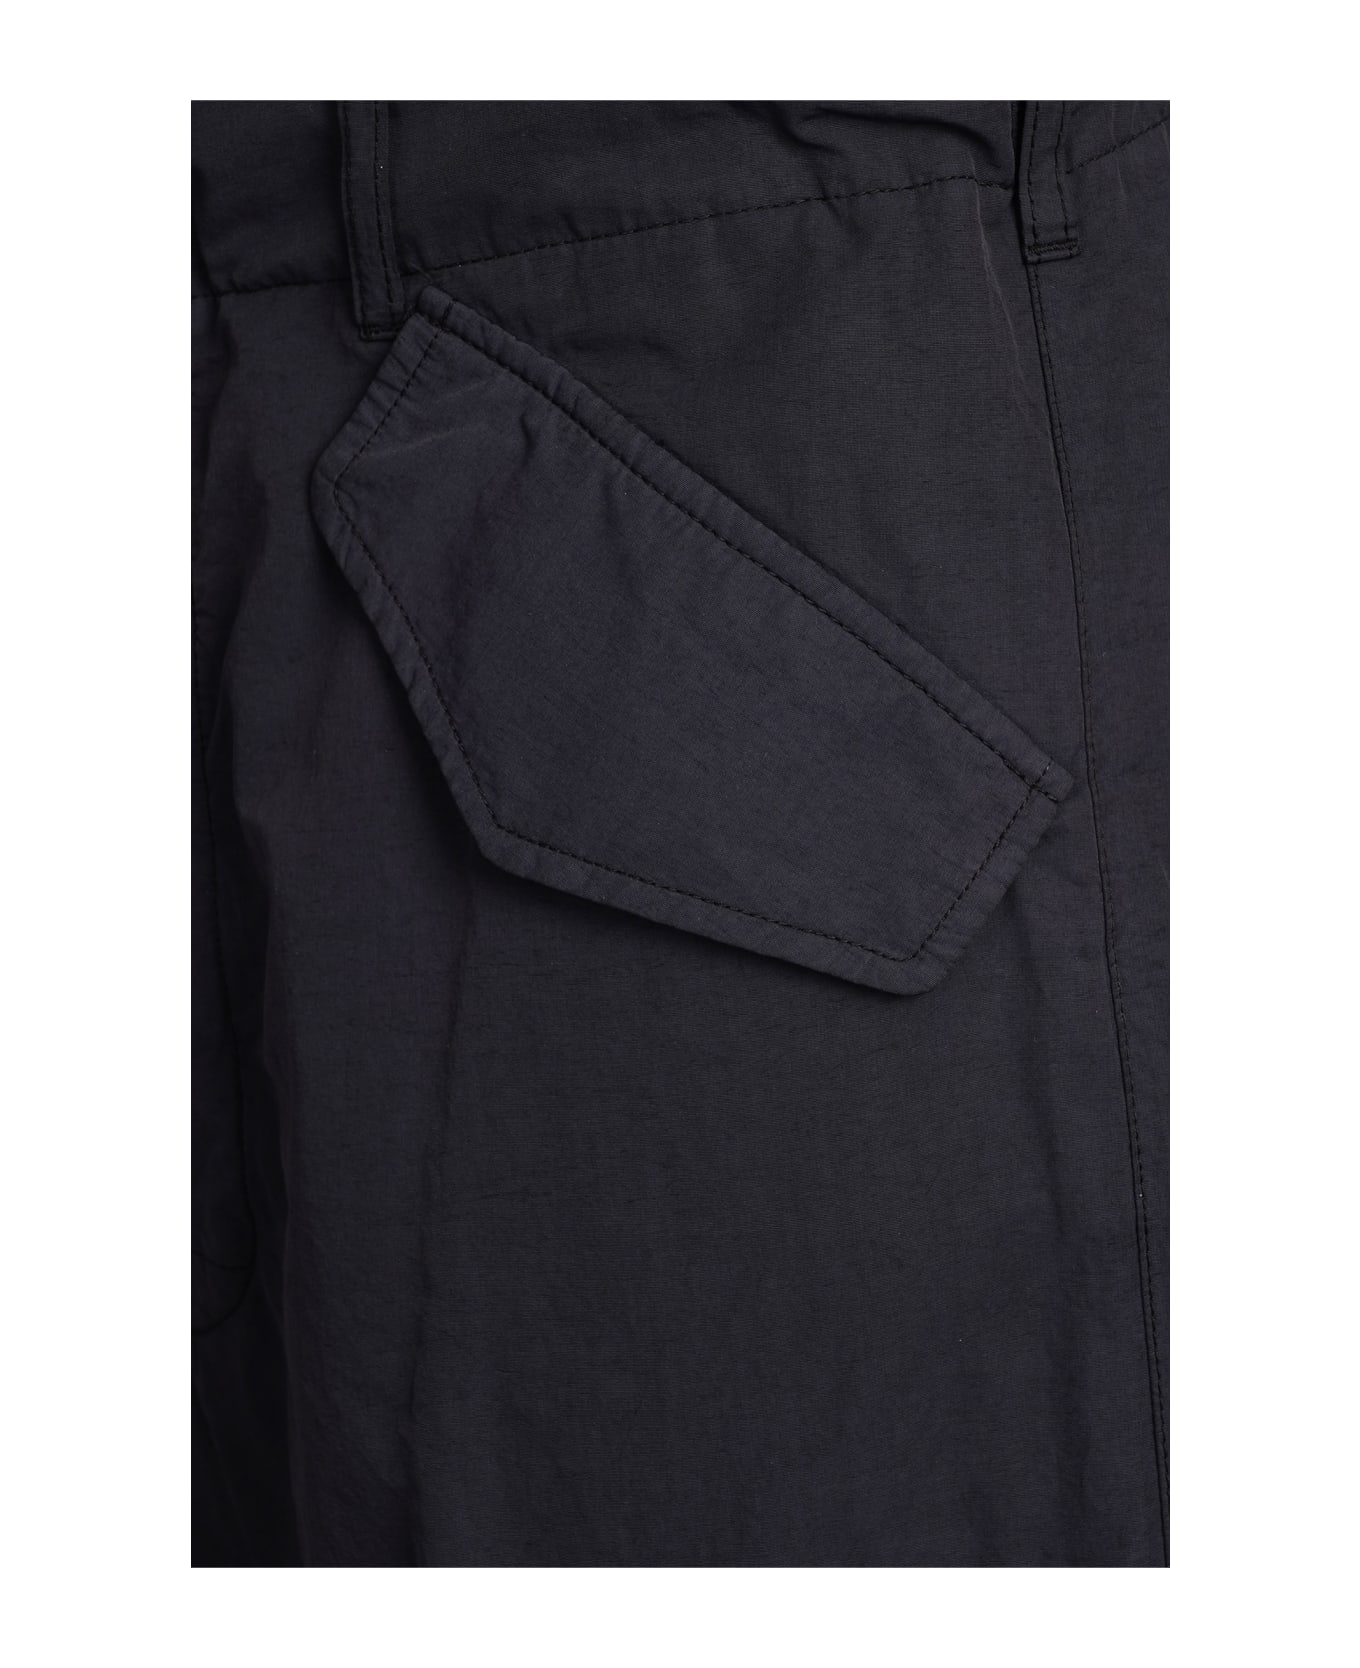 Laneus Pants In Black Cotton - black ボトムス